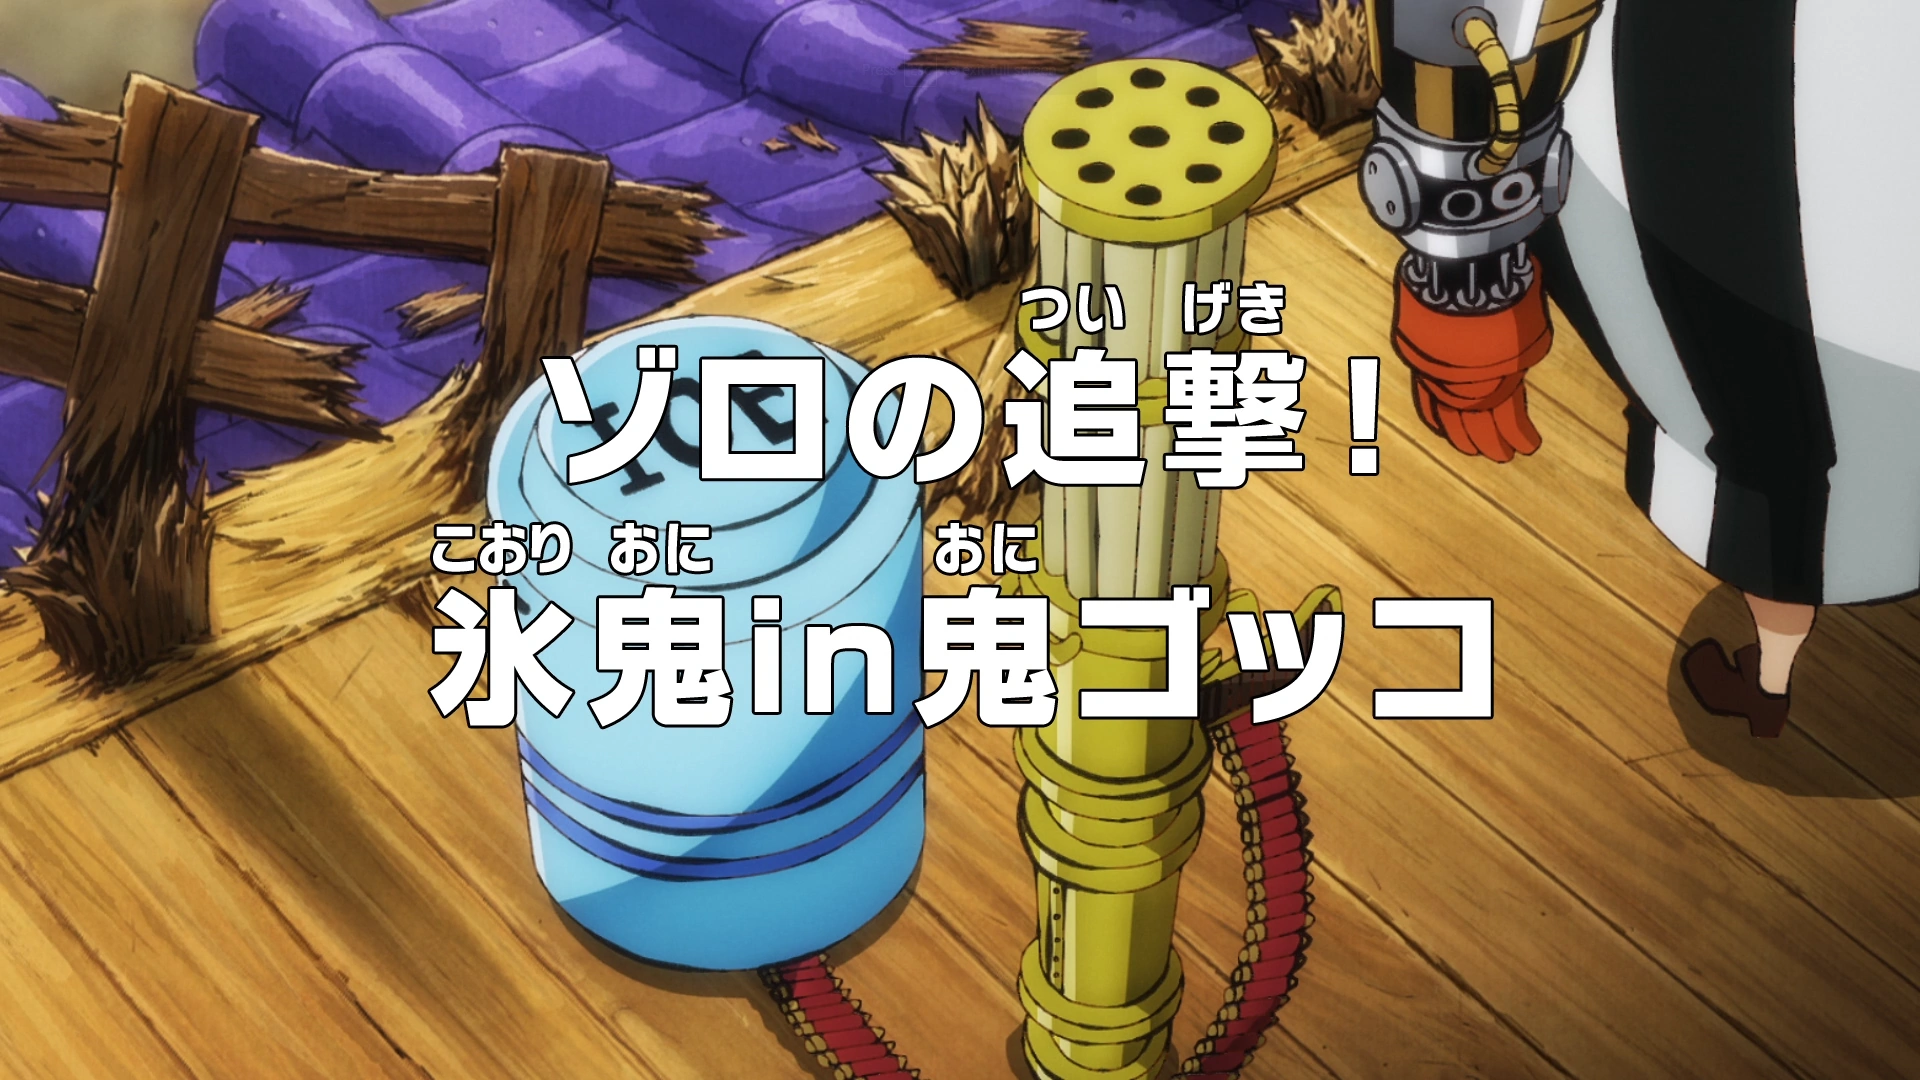 Capítulo 1007 de One Piece: Spoilers e data de lançamento - Manga Livre RS